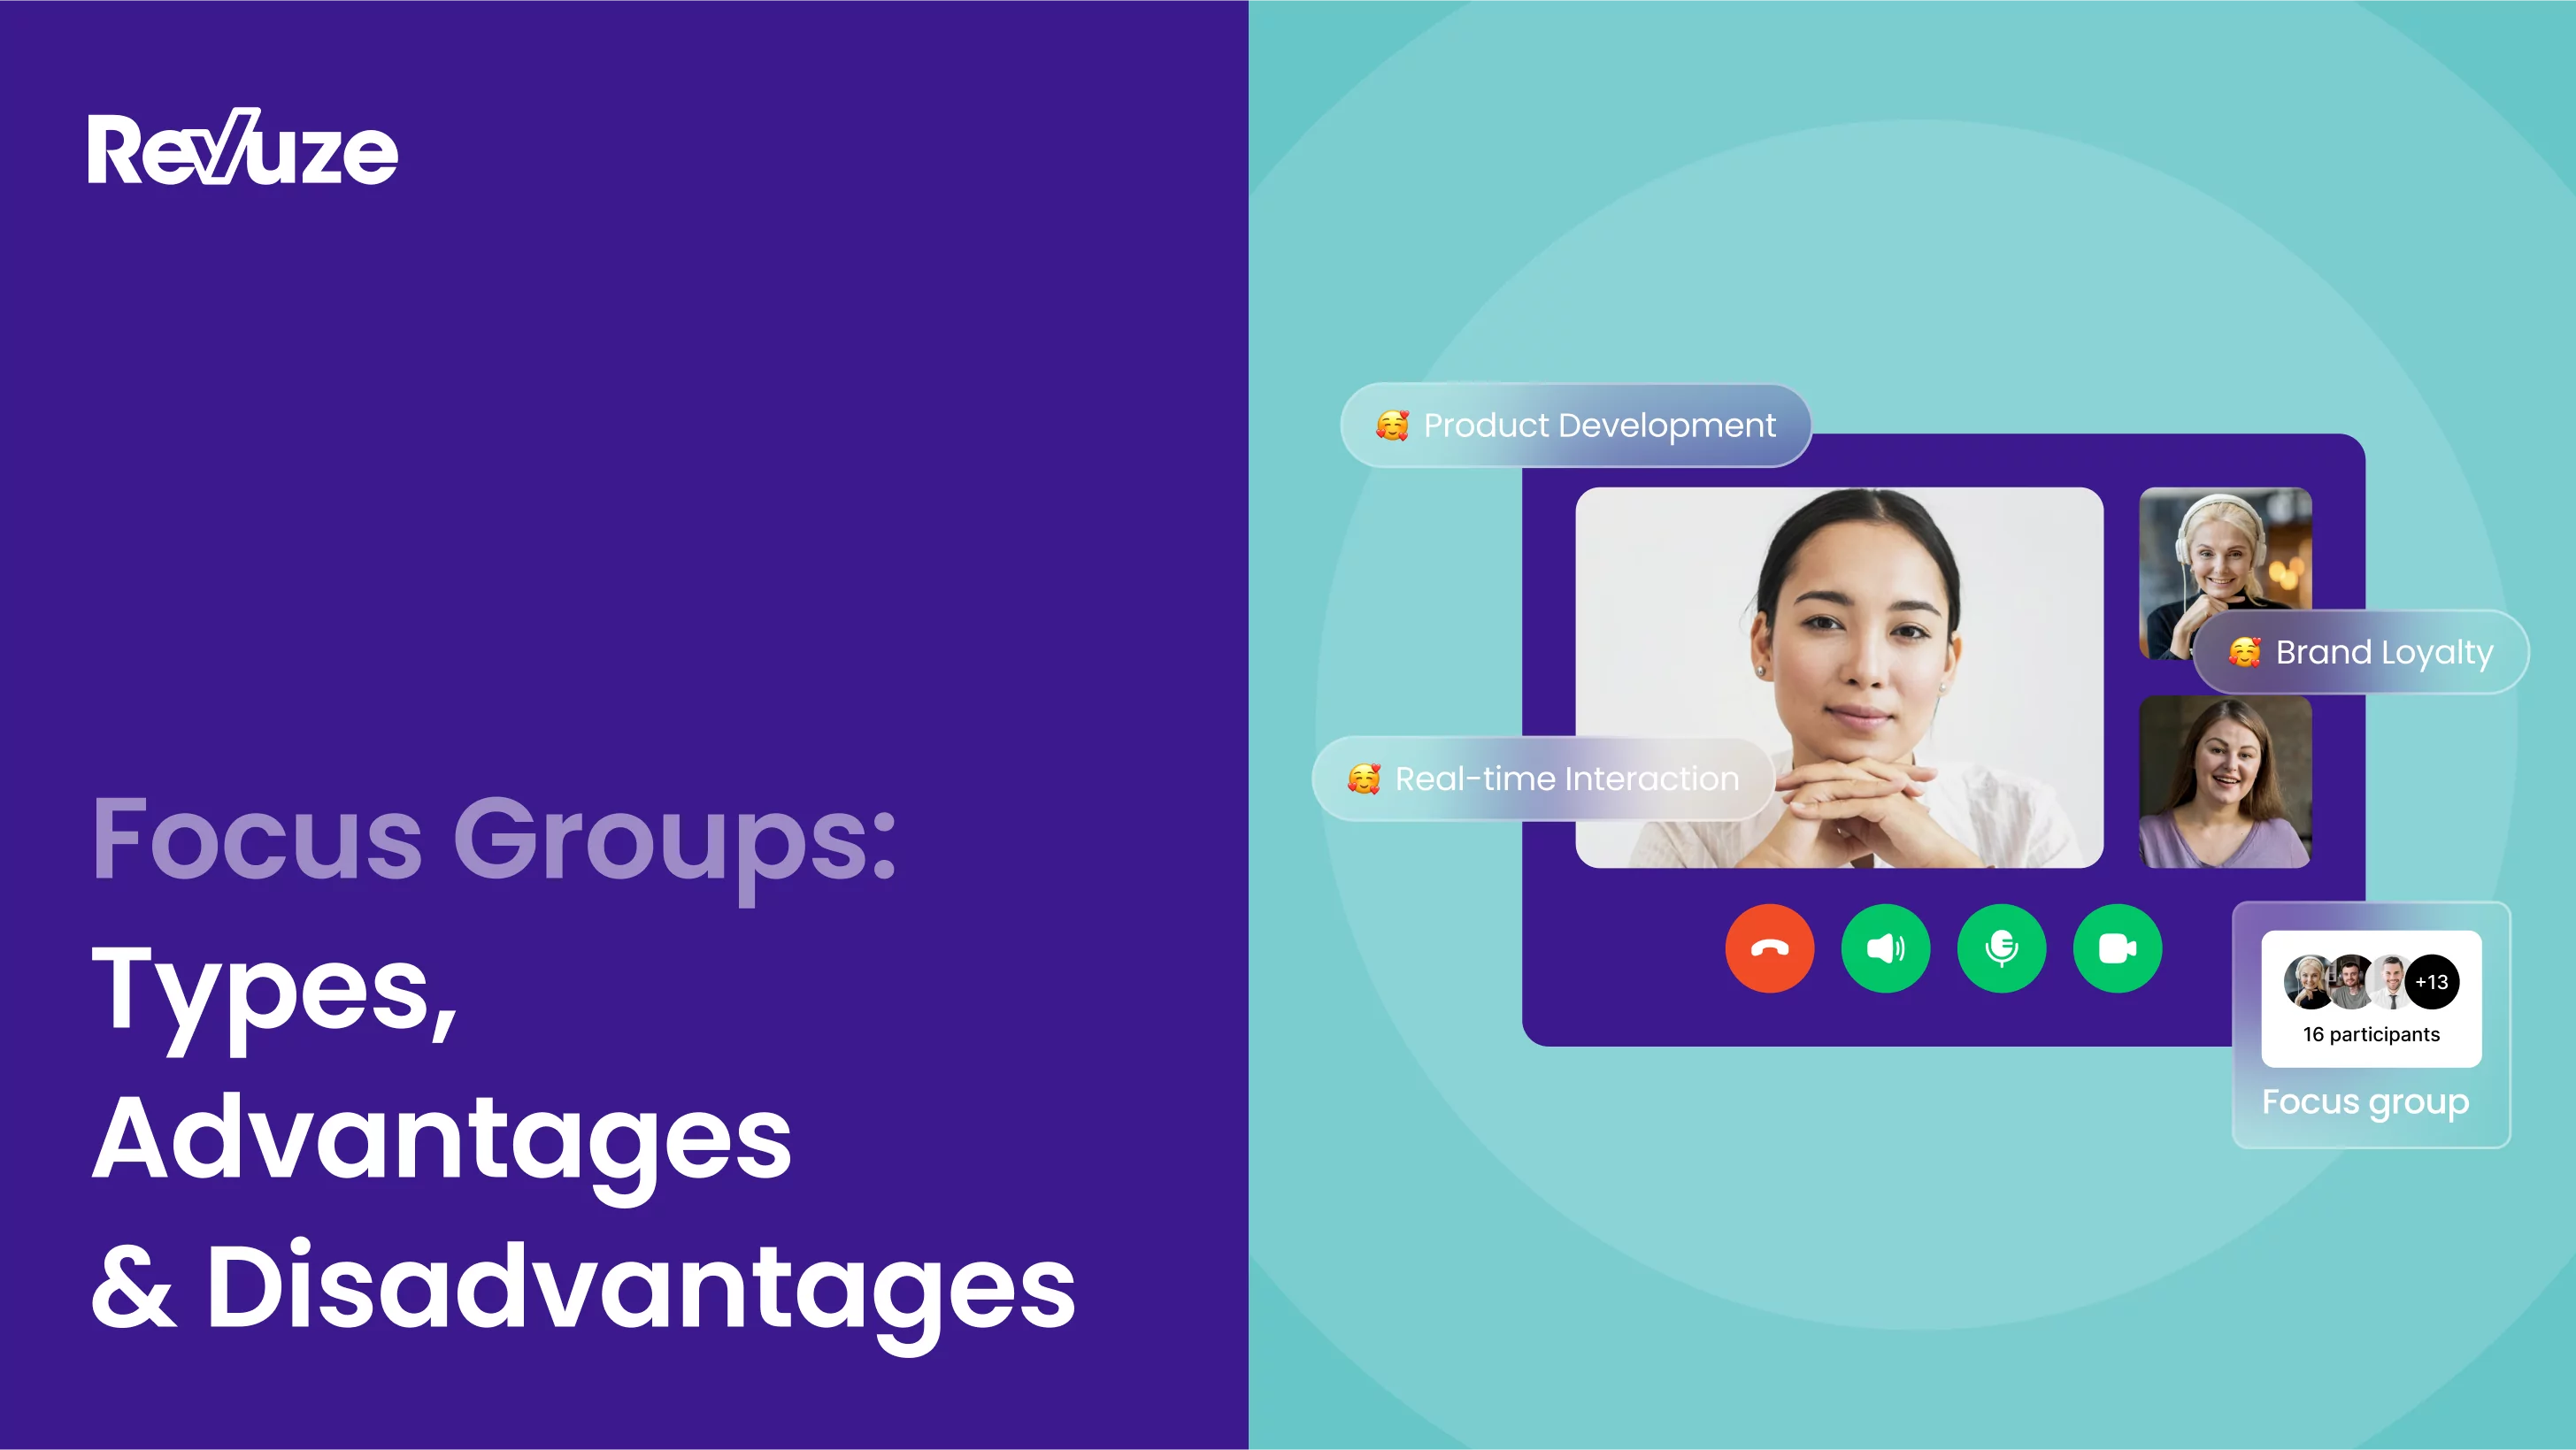 Focus Groups: Types, Advantages & Disadvantages